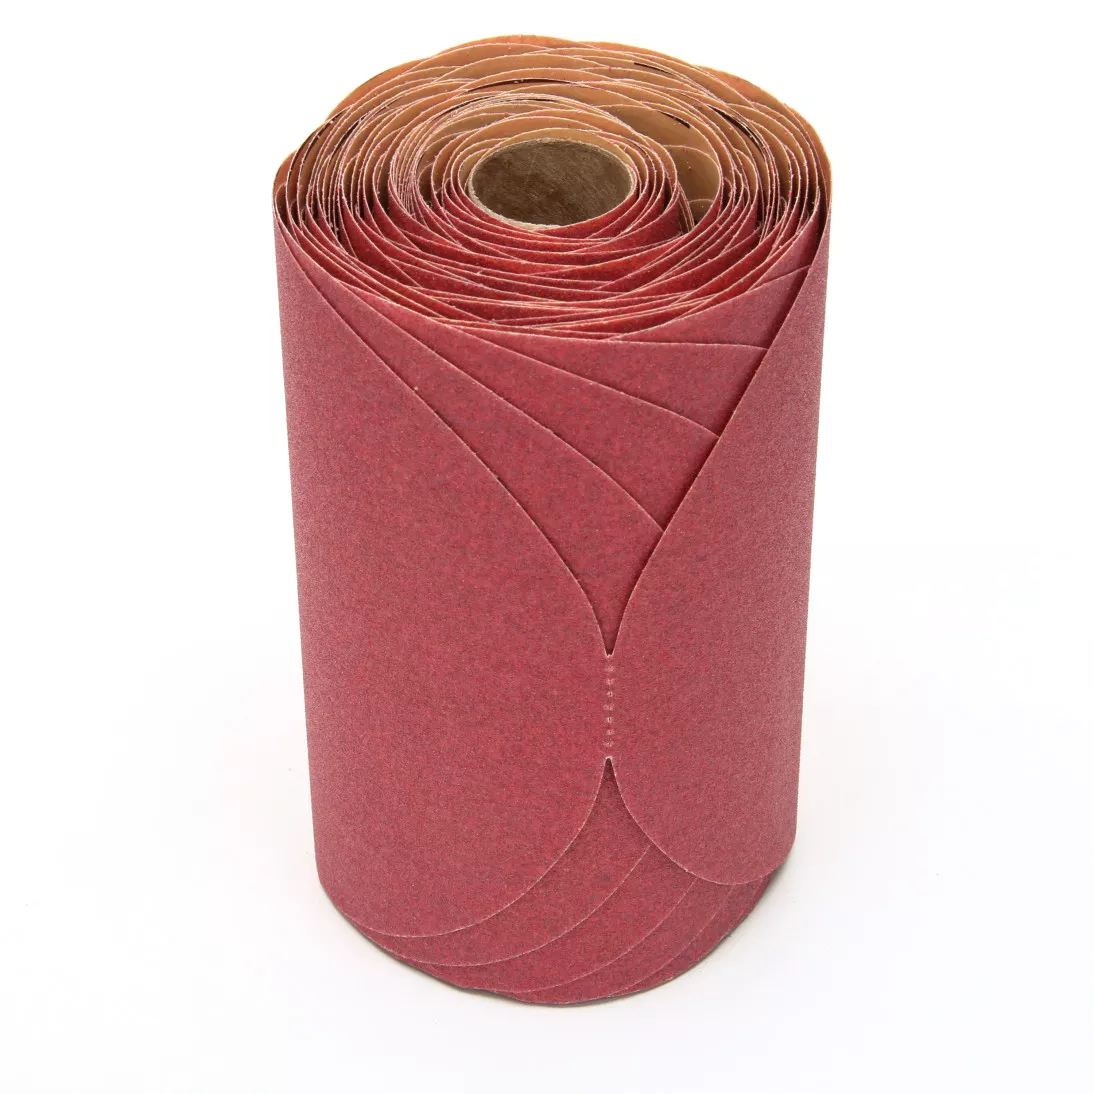 3M™ Red Abrasive Stikit™ Disc, 01114, 6 in, P120 grade, 100 discs per
roll, 6 rolls per case